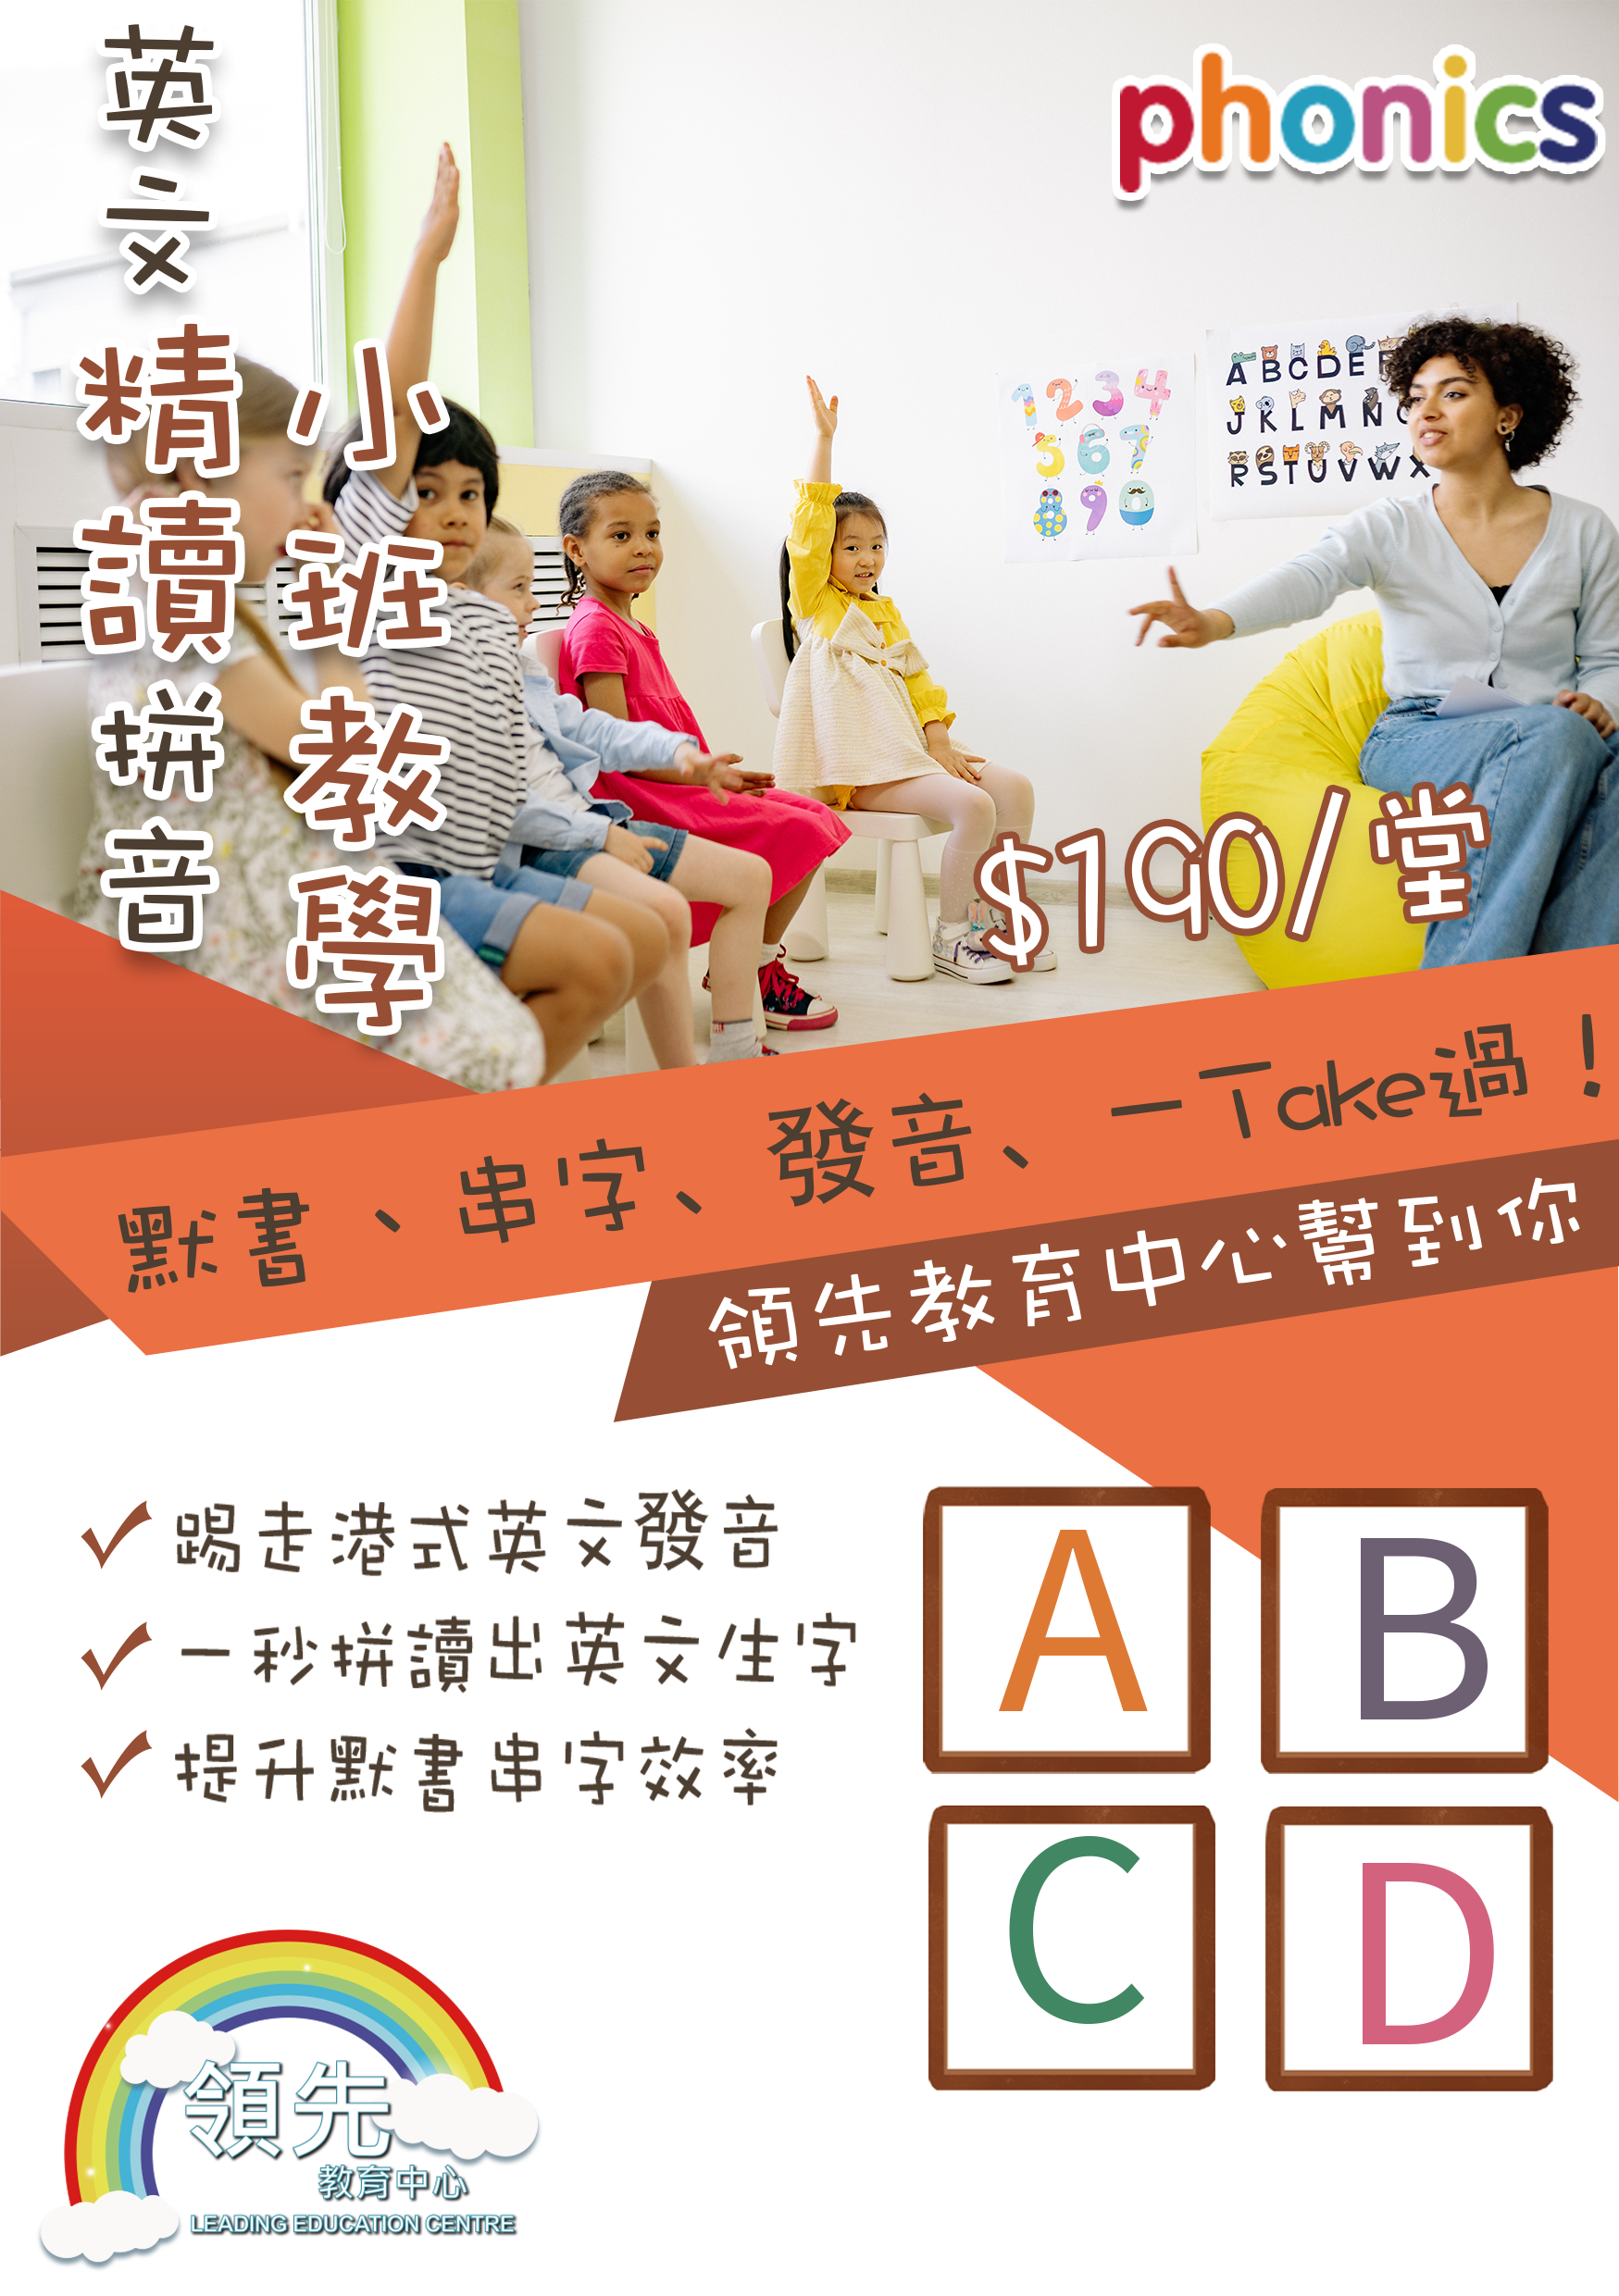 領先教育辦學20年，為香港不少學生建立鞏固的英文基礎，拼音班/英文專科班等深受家長歡迎及推介!